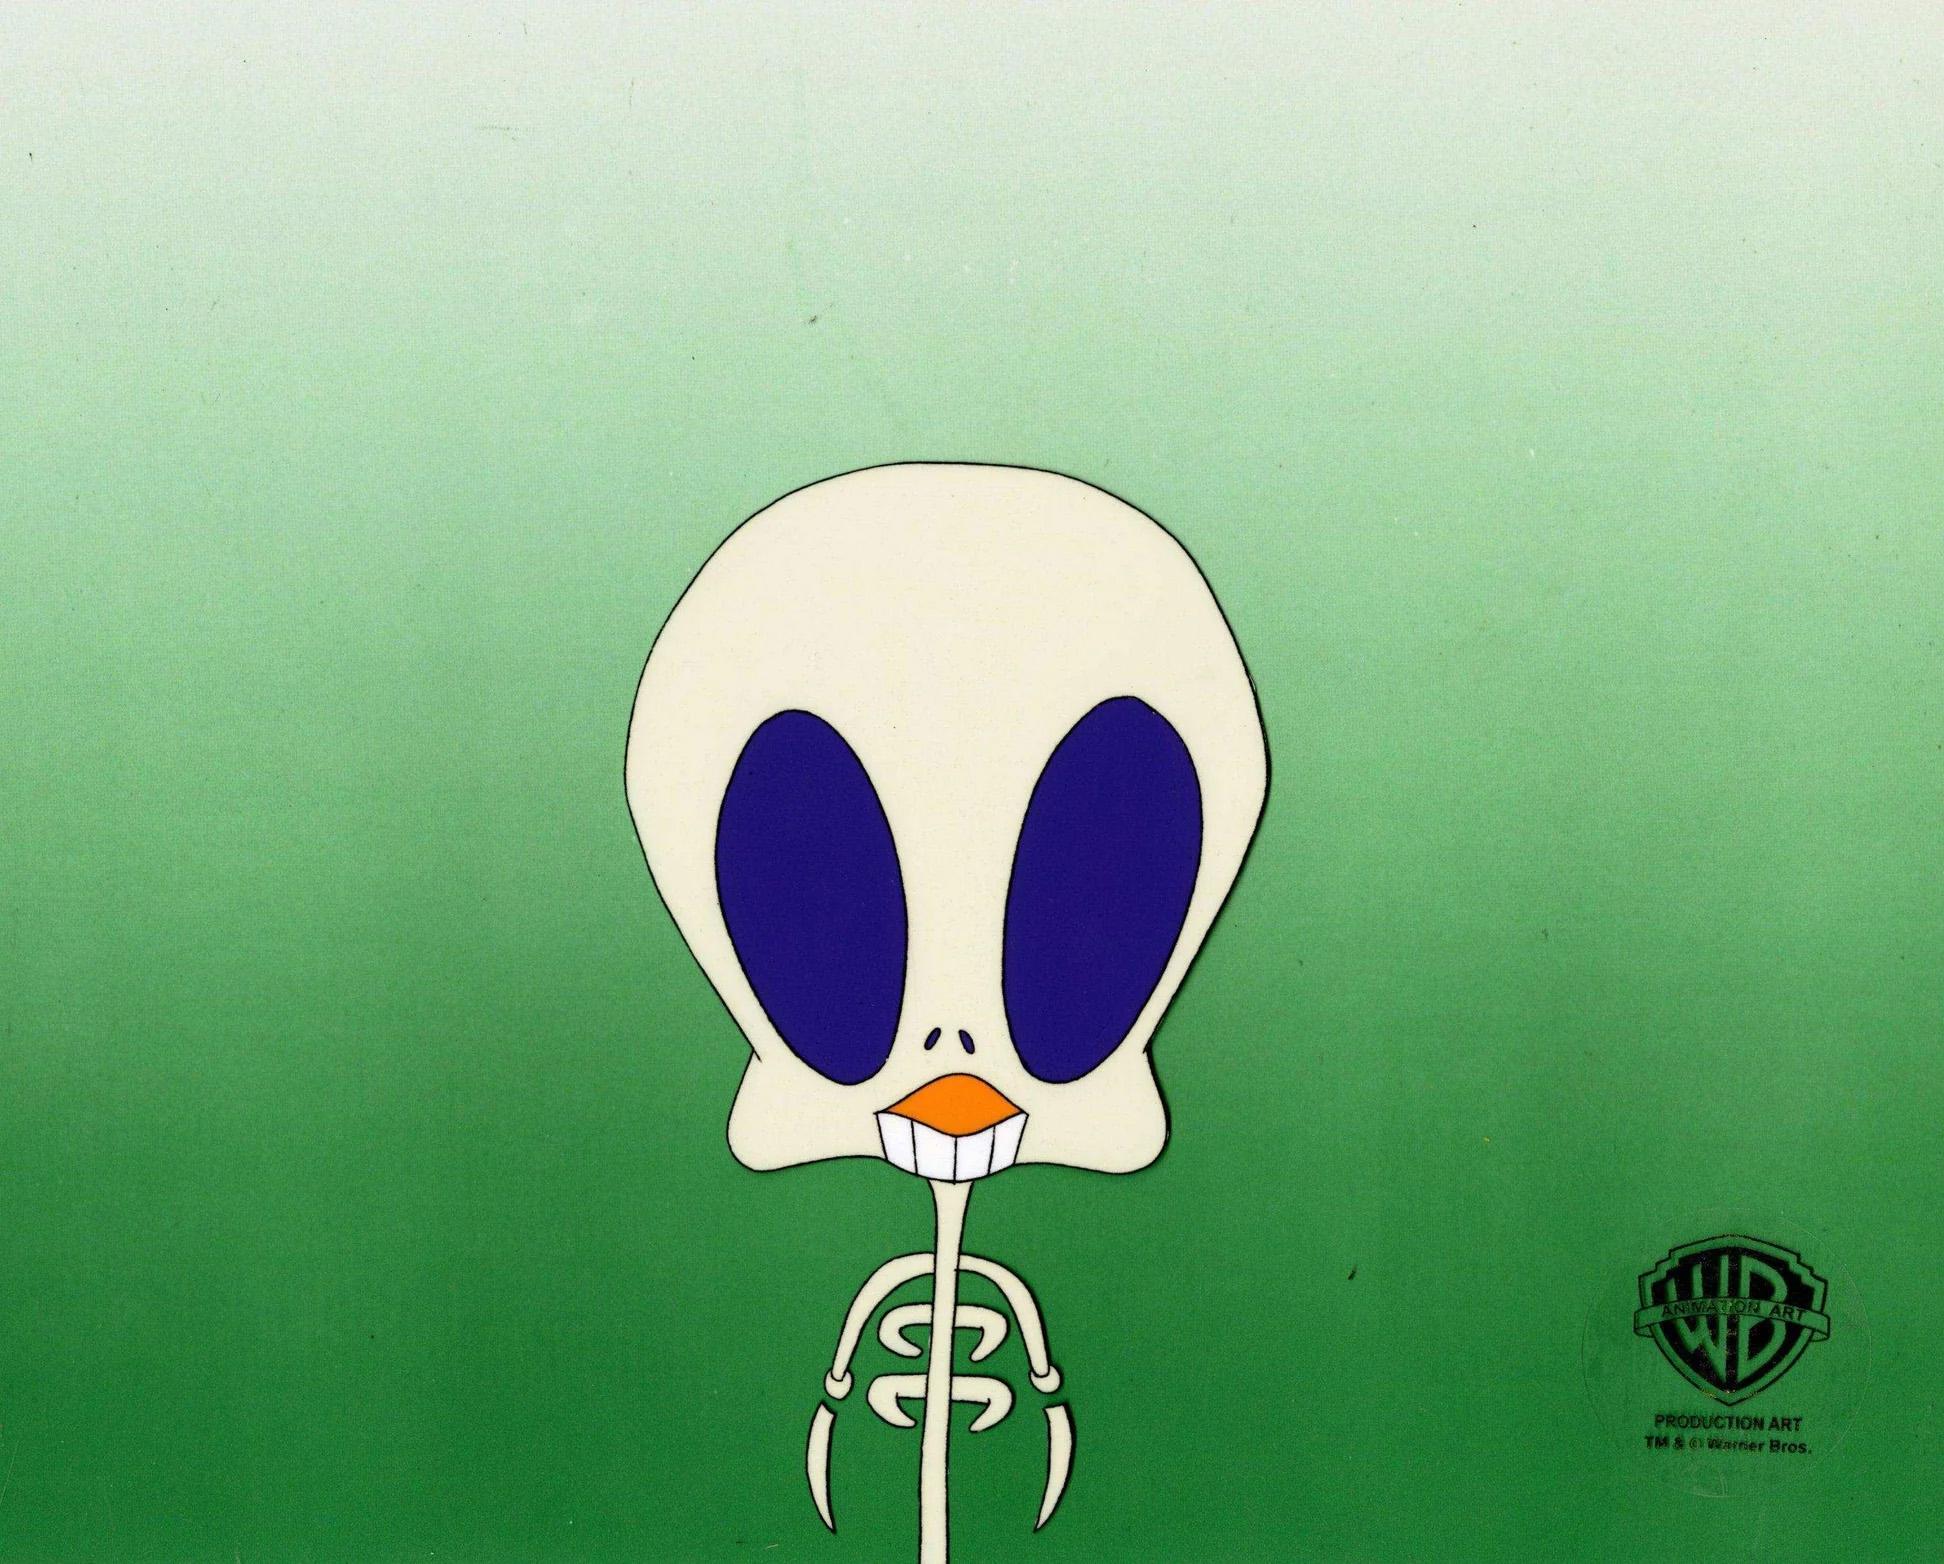 Looney Tunes Original Production Cel mit passender Zeichnung: Tweety – Art von Looney Tunes Studio Artists